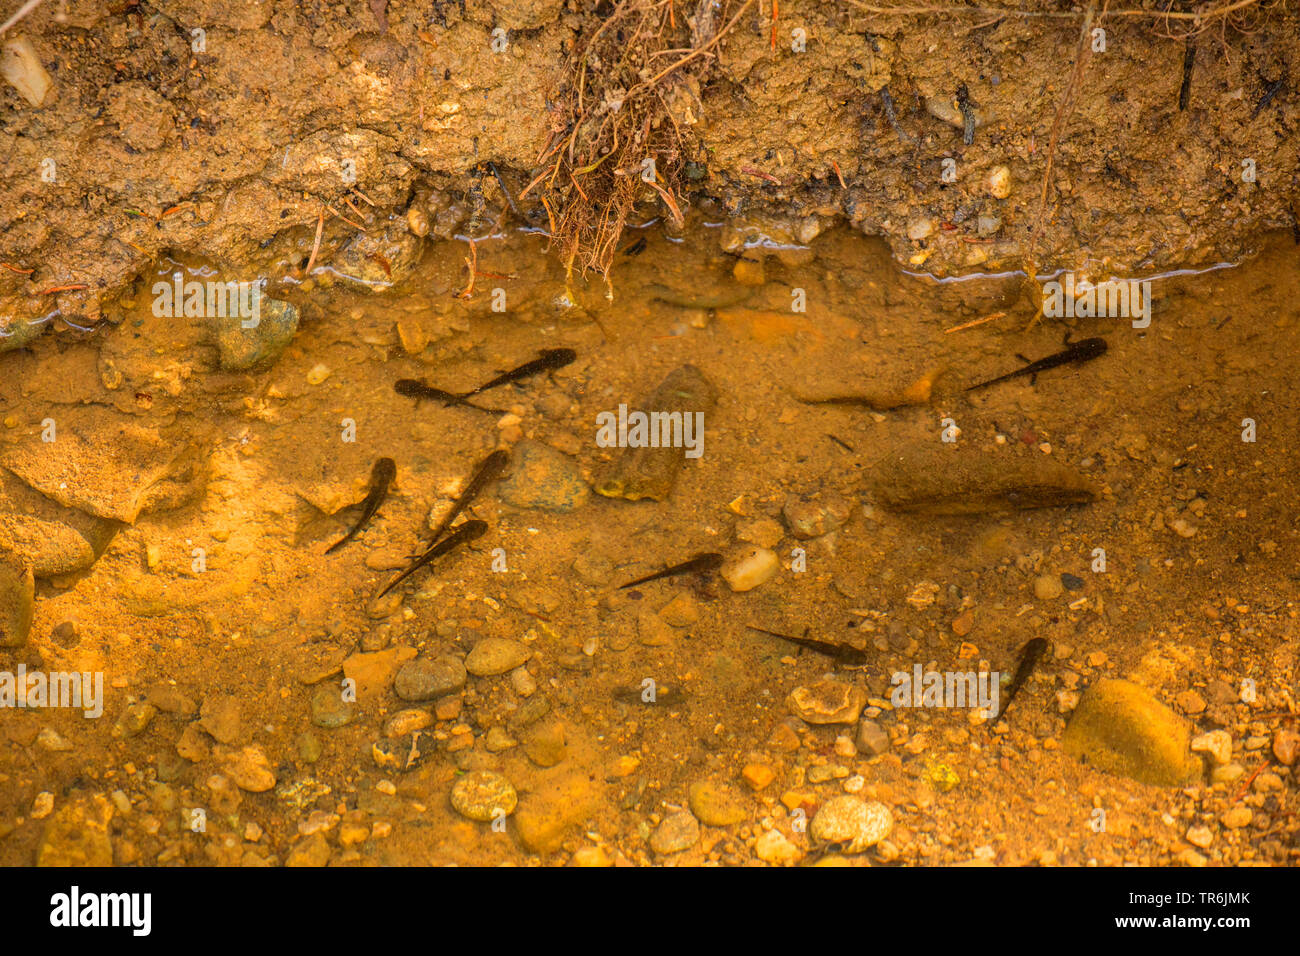 European fire salamander (Salamandra salamandra), larvae in water, Germany, Bavaria Stock Photo